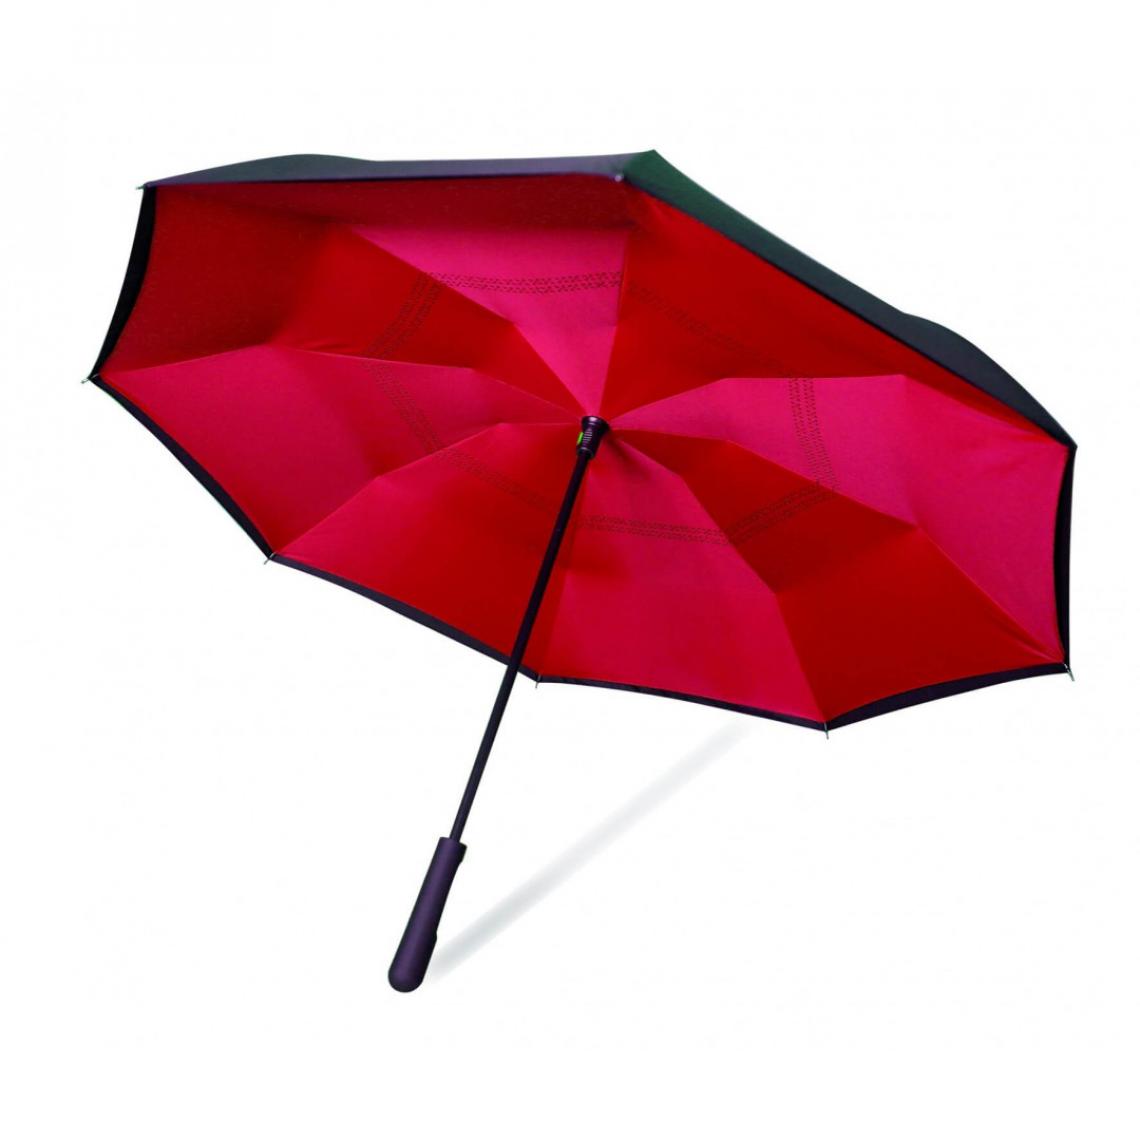 Venteo - Magique Umbrella Intérieur Rouge - Parapluie magique avec ouverture inversée - Couleur ROUGE - Matériel de pose, produits d'entretien